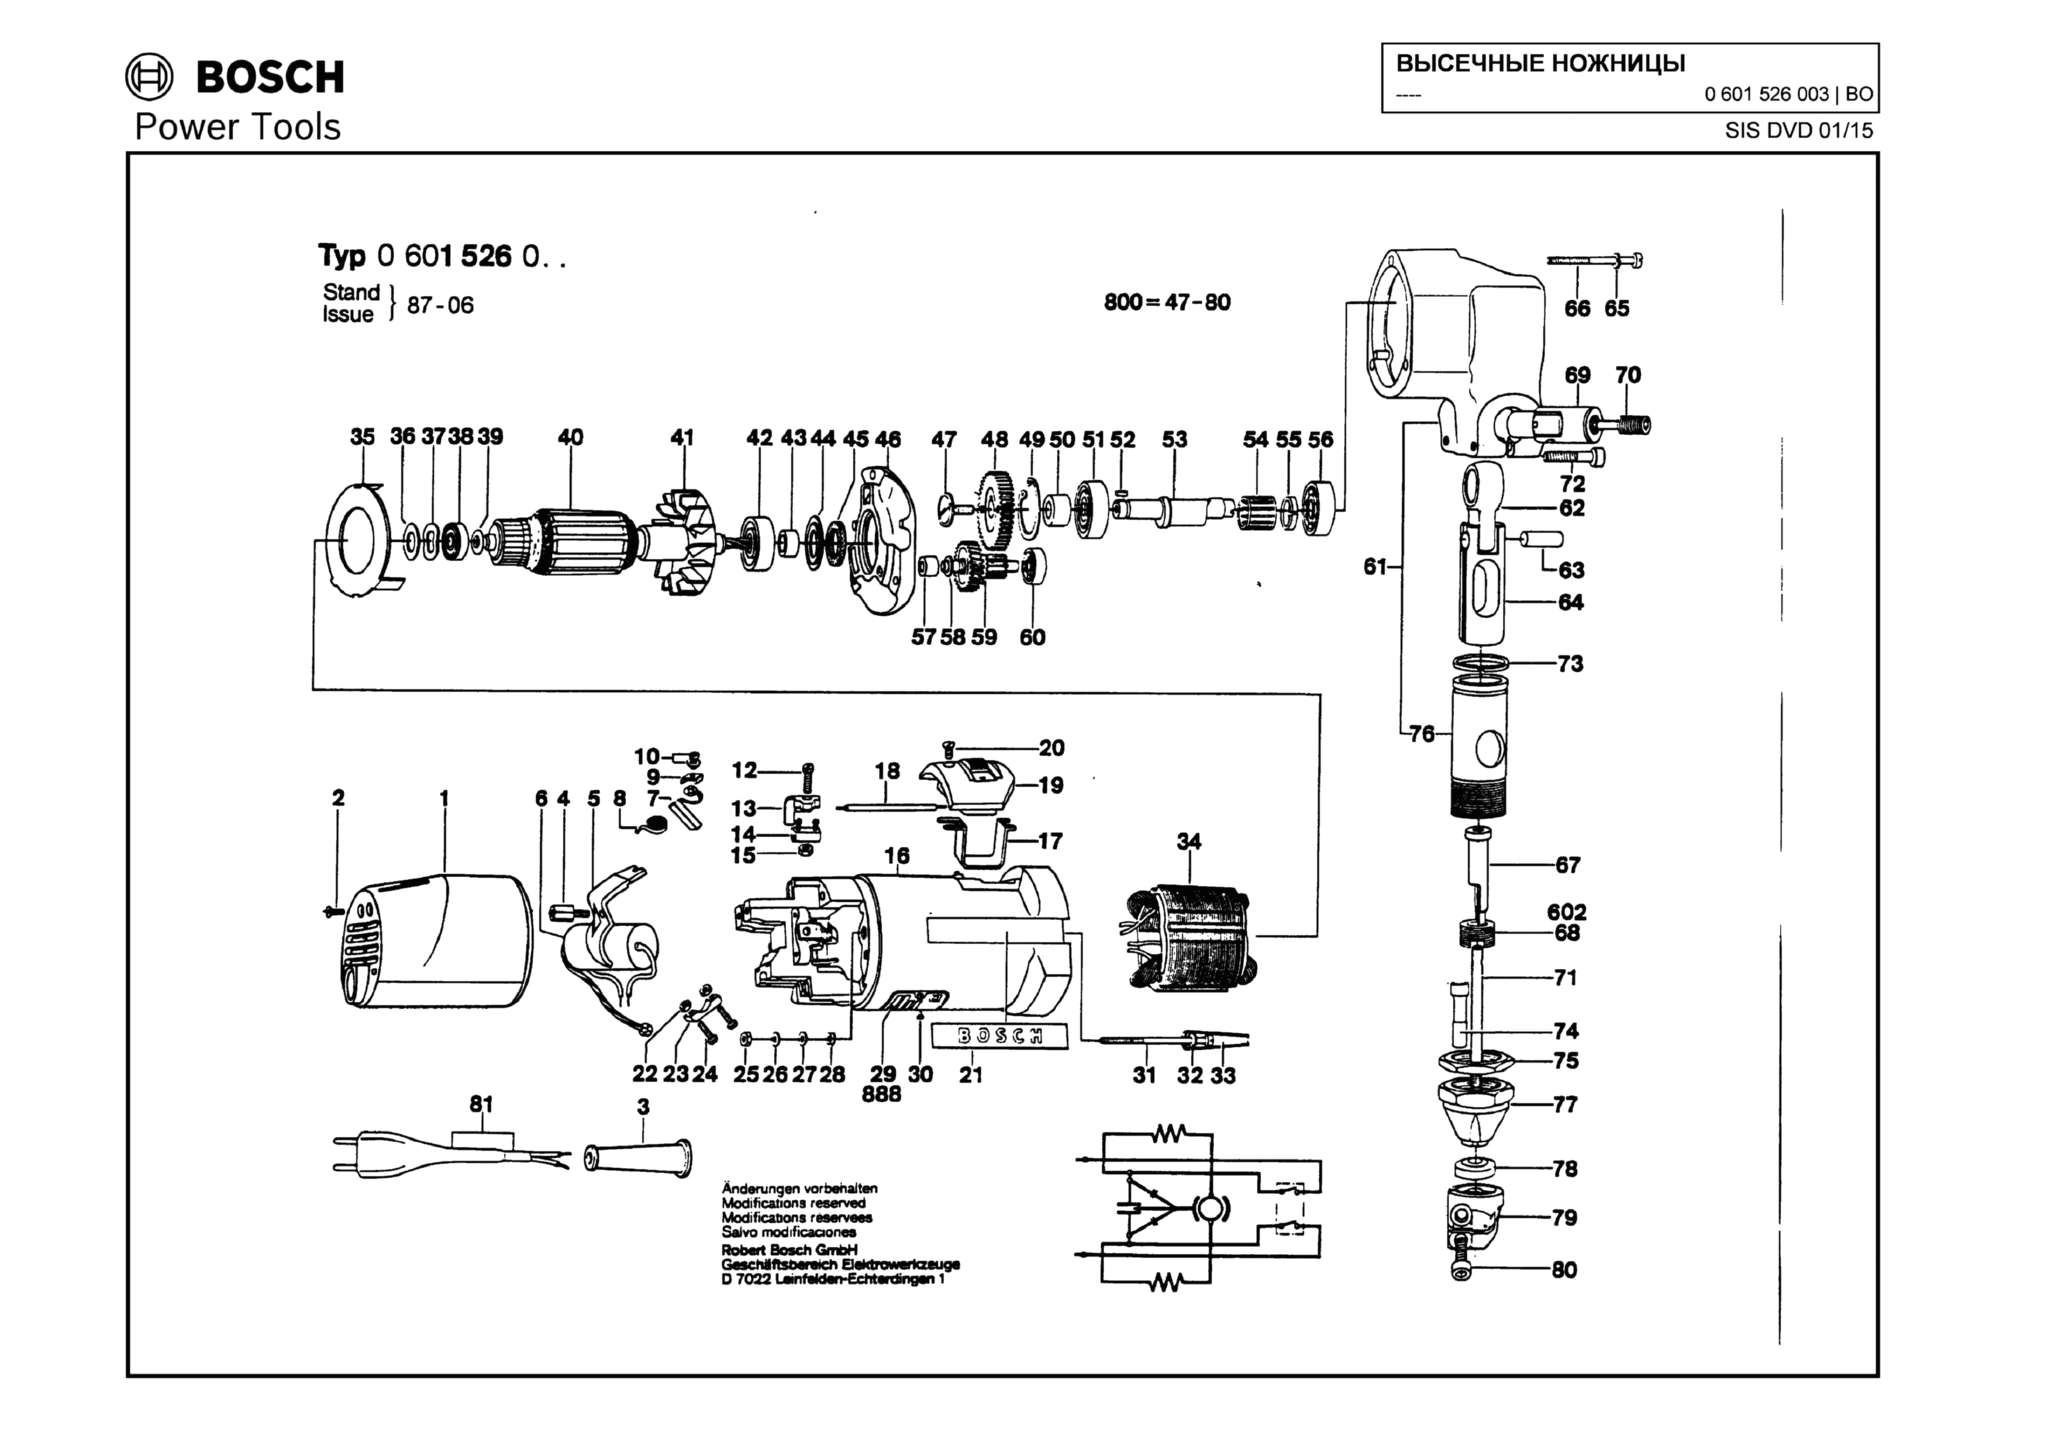 Запчасти, схема и деталировка Bosch (ТИП 0601526003)